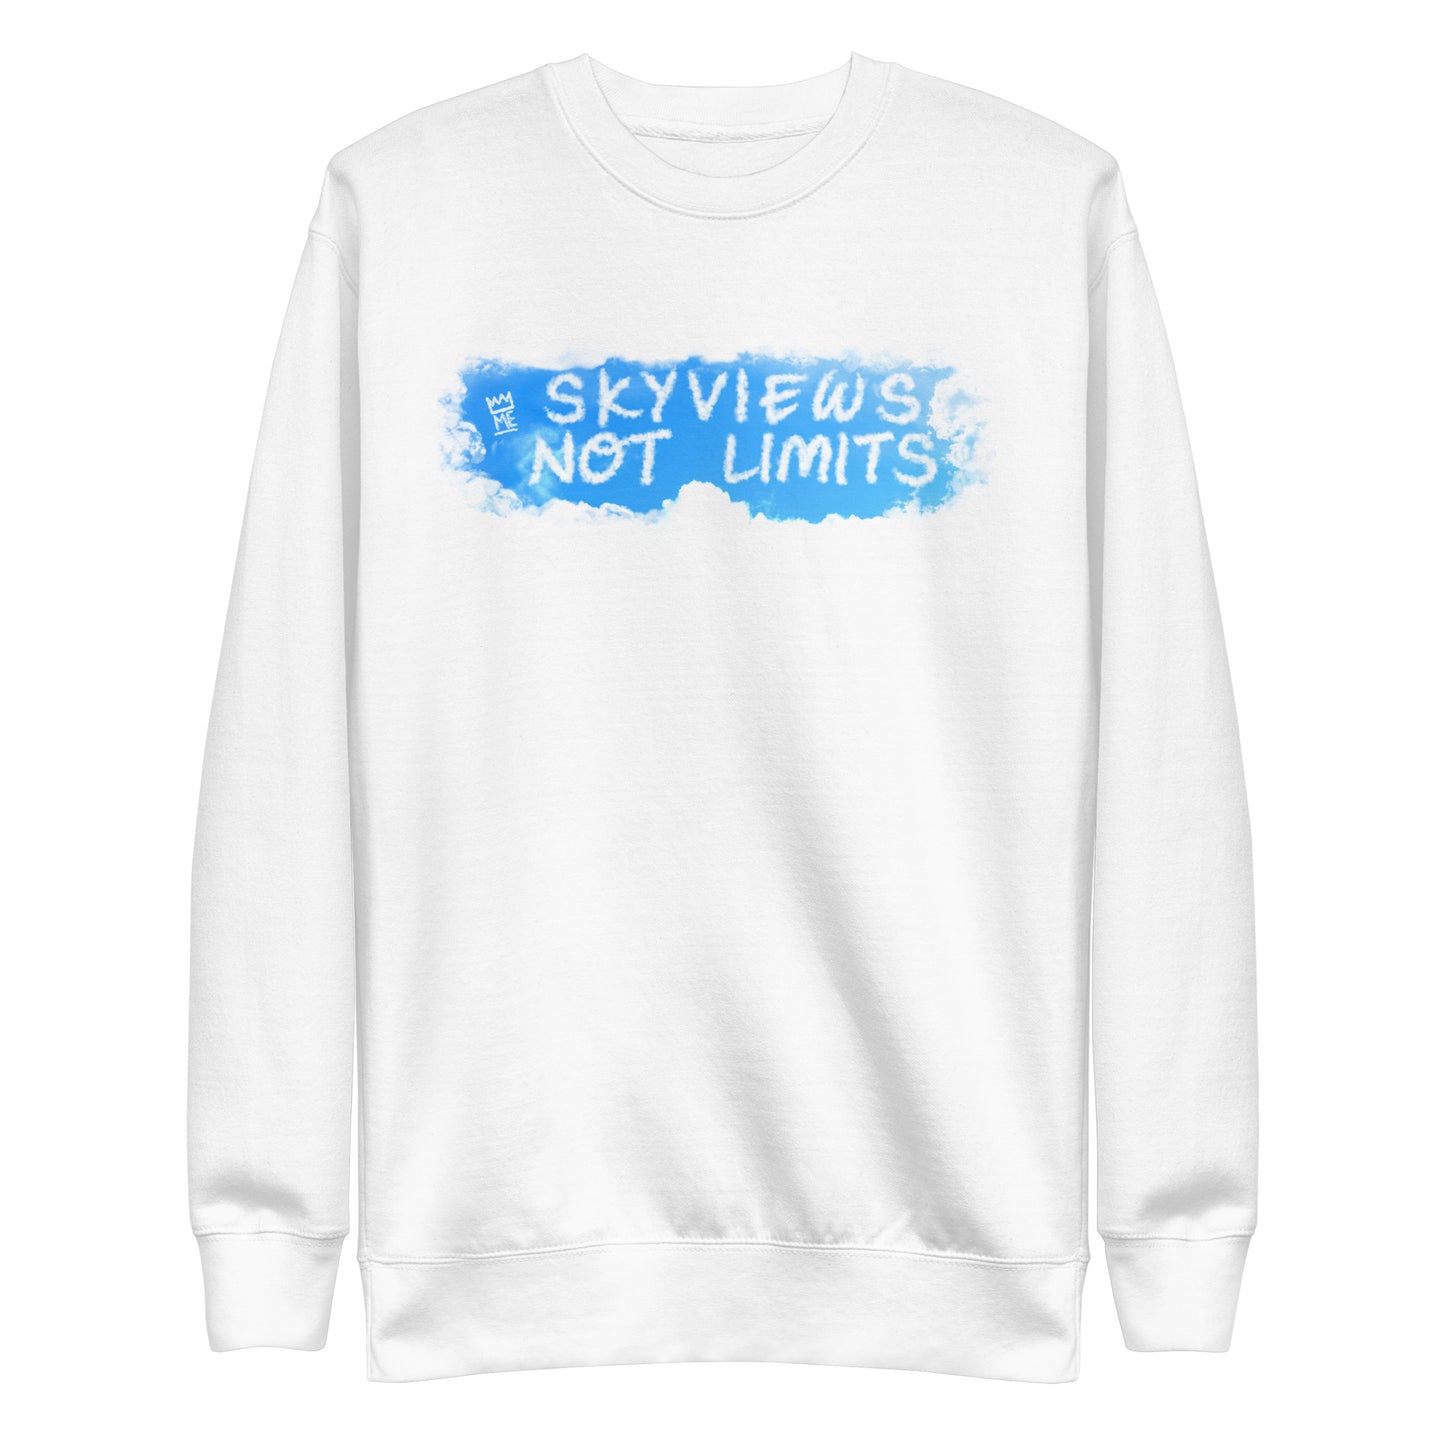 Sky views not limits Unisex Premium Sweatshirt